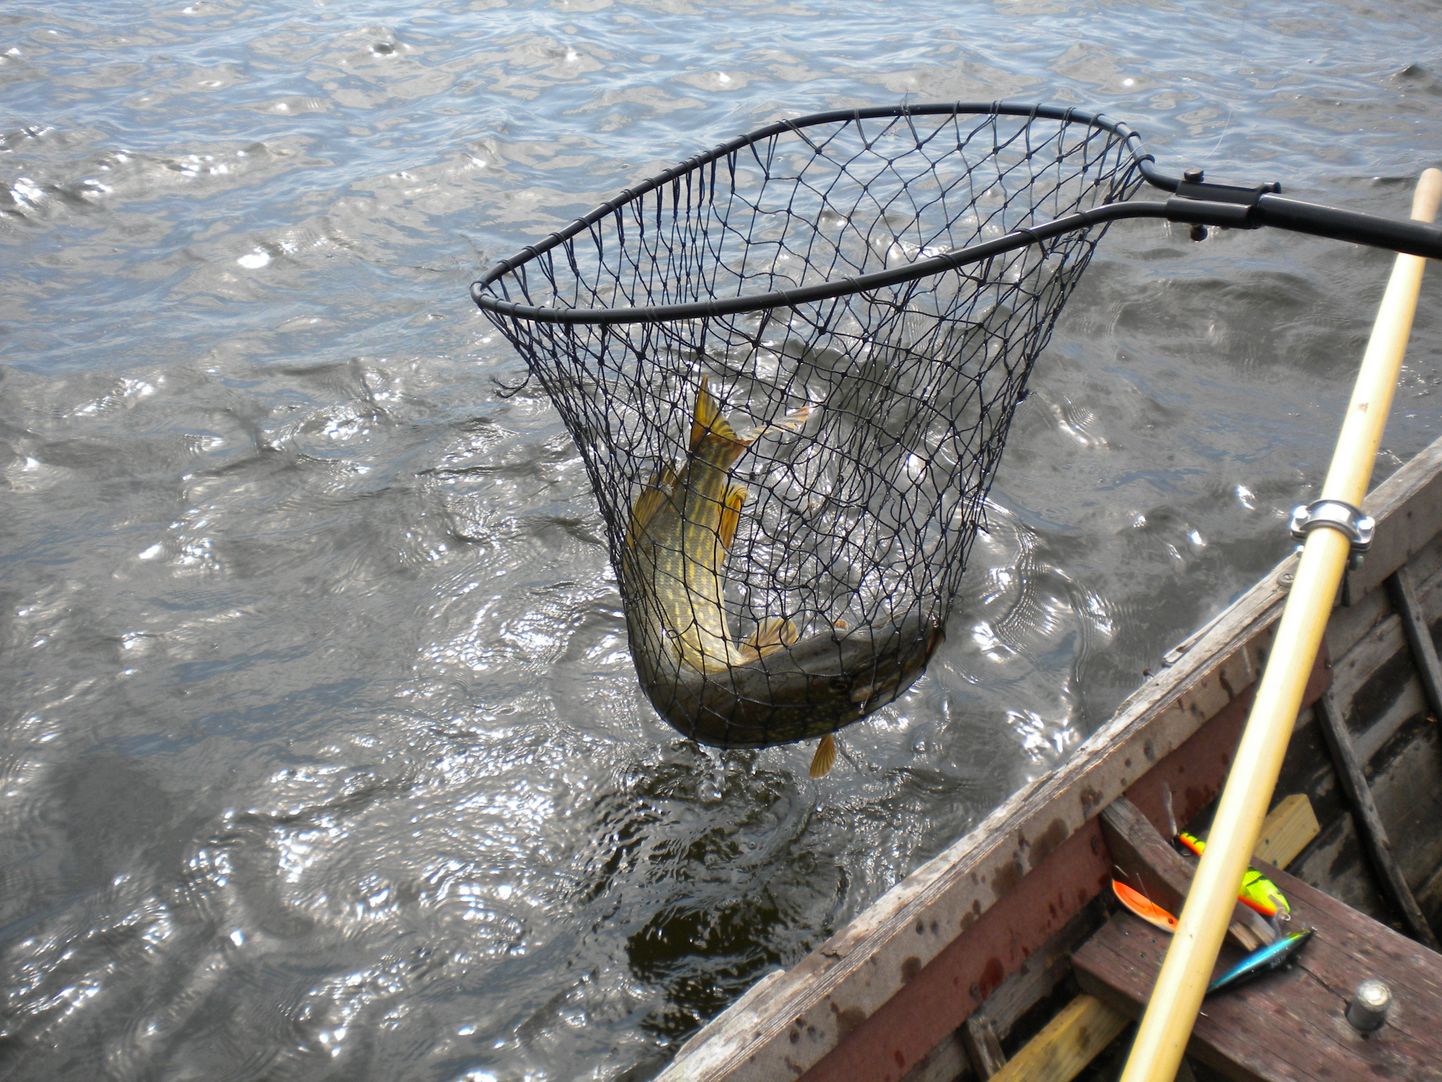 Pühapäeval peetakse Viljandi järvel spinninguga kalapüügivõistlust.